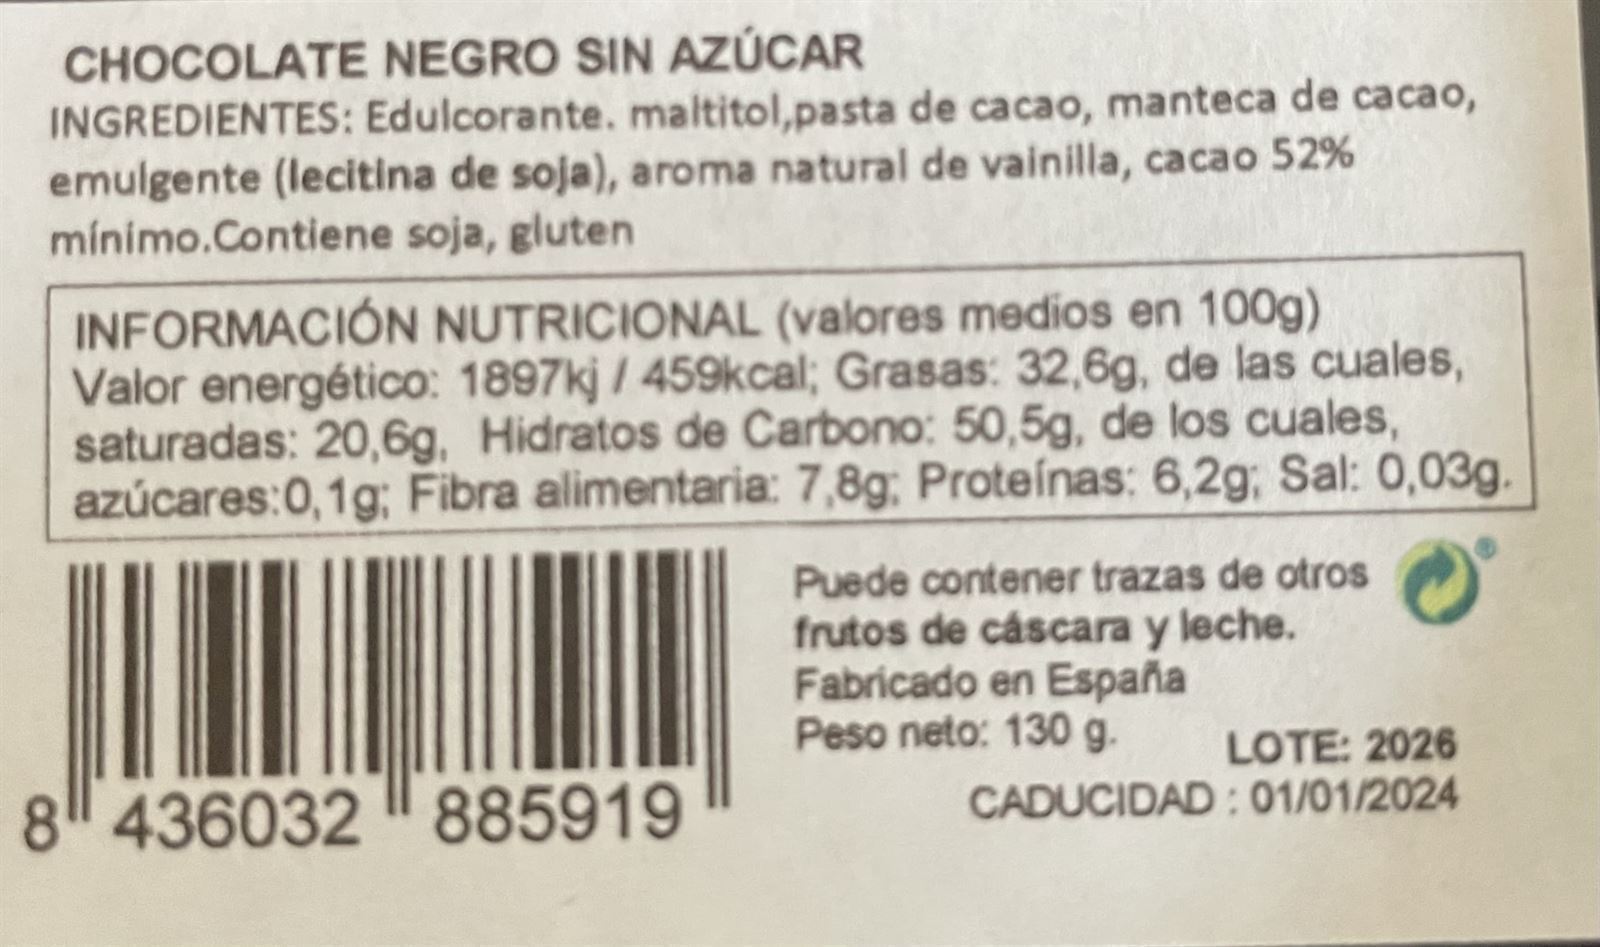 Lata onzas de chocolate negro sin azúcar añadido Pazo de Coruxo 130grs - Imagen 2